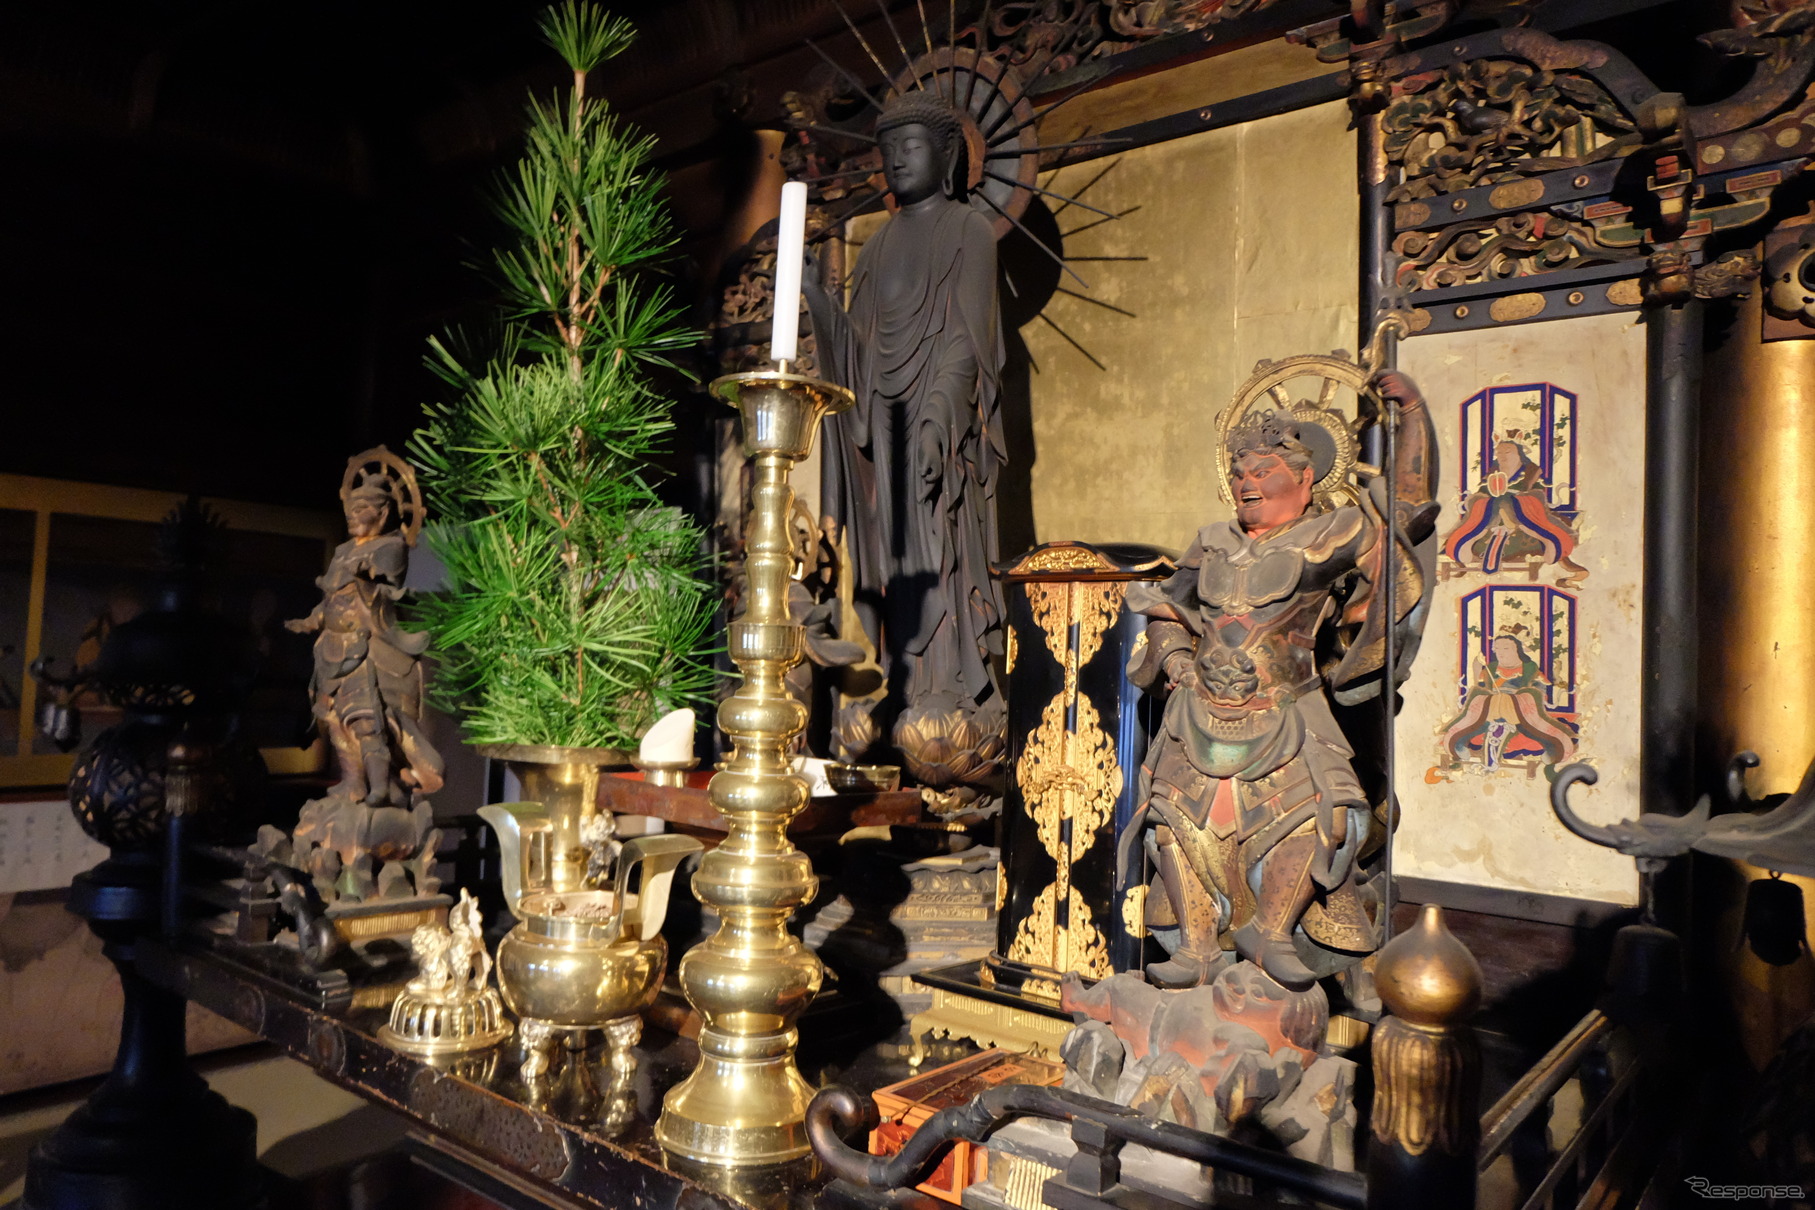 運慶の作と伝えられる仏像